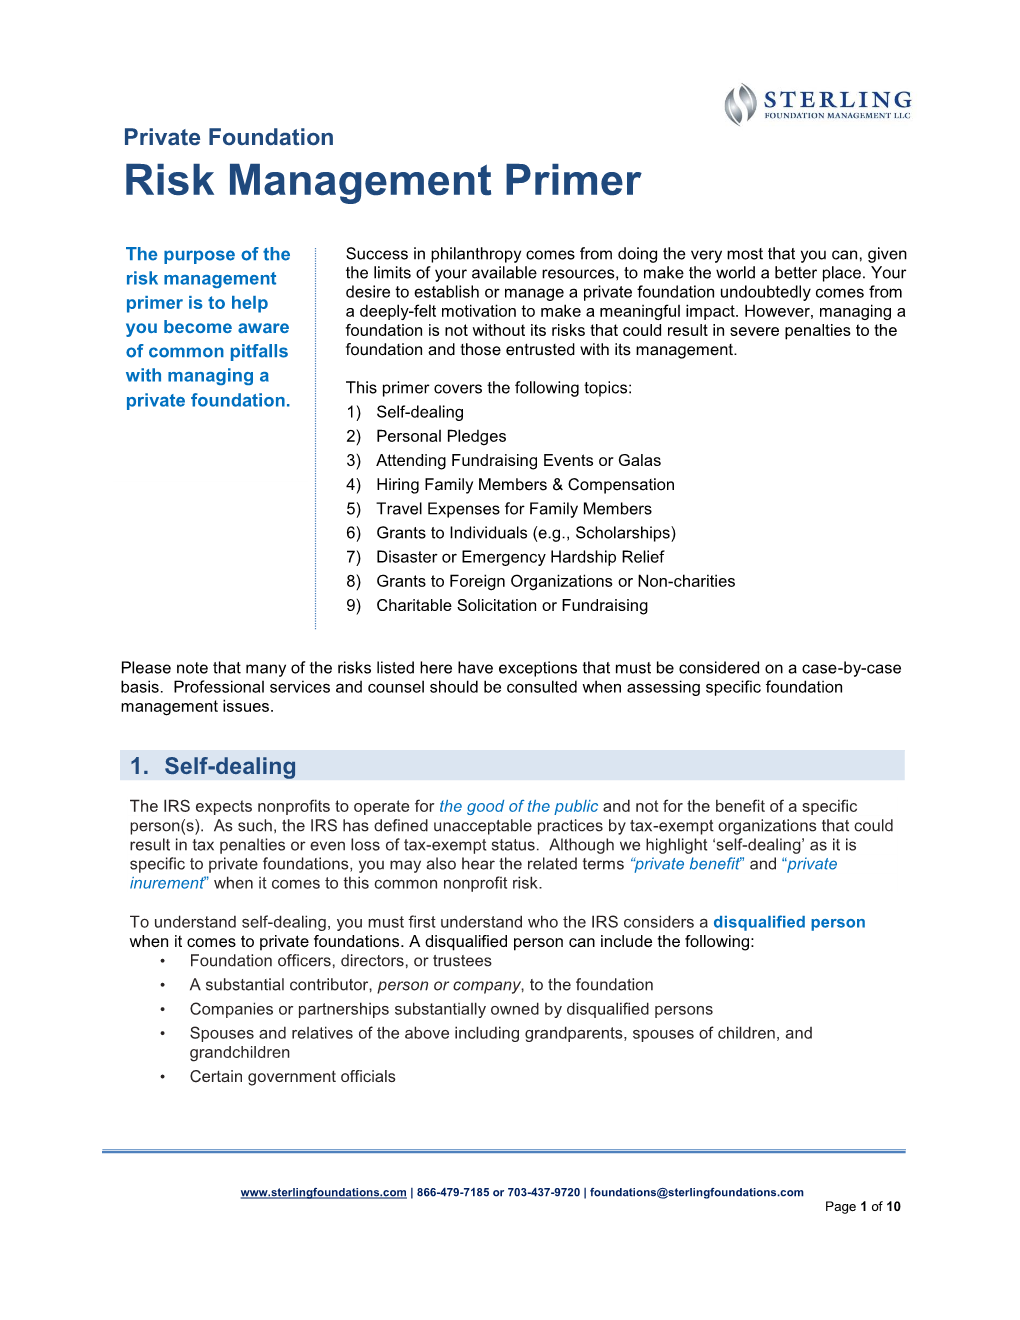 Private Foundation Risk Management Primer